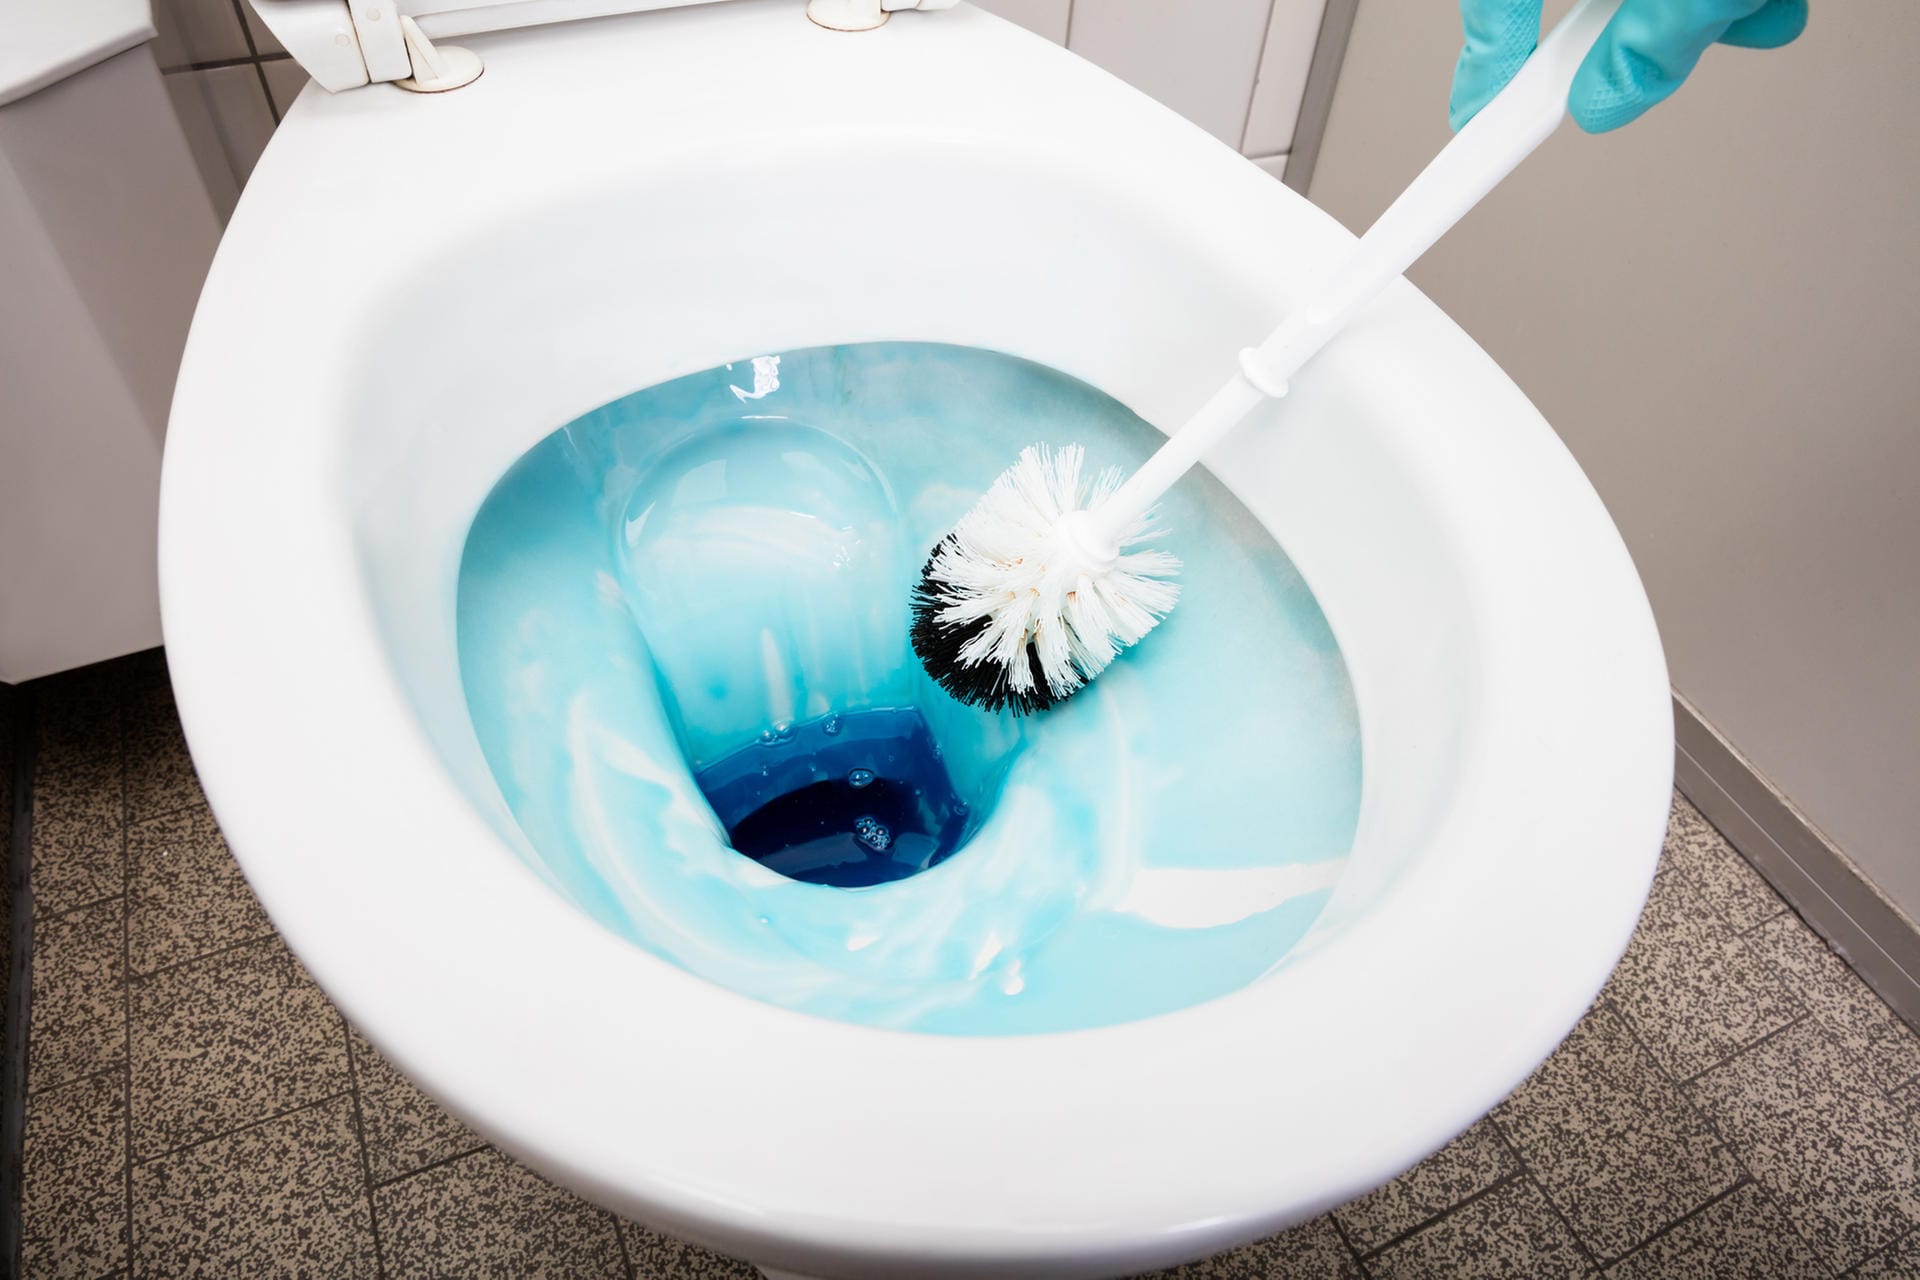 Toilettenbürste: Kotreste und Bremsspuren auf der Keramik sollten unverzüglich vom Verursacher entfernt werden – eigentlich eine Selbstverständlichkeit, doch in vielen Haushalten noch immer nicht gelebt Praxis.